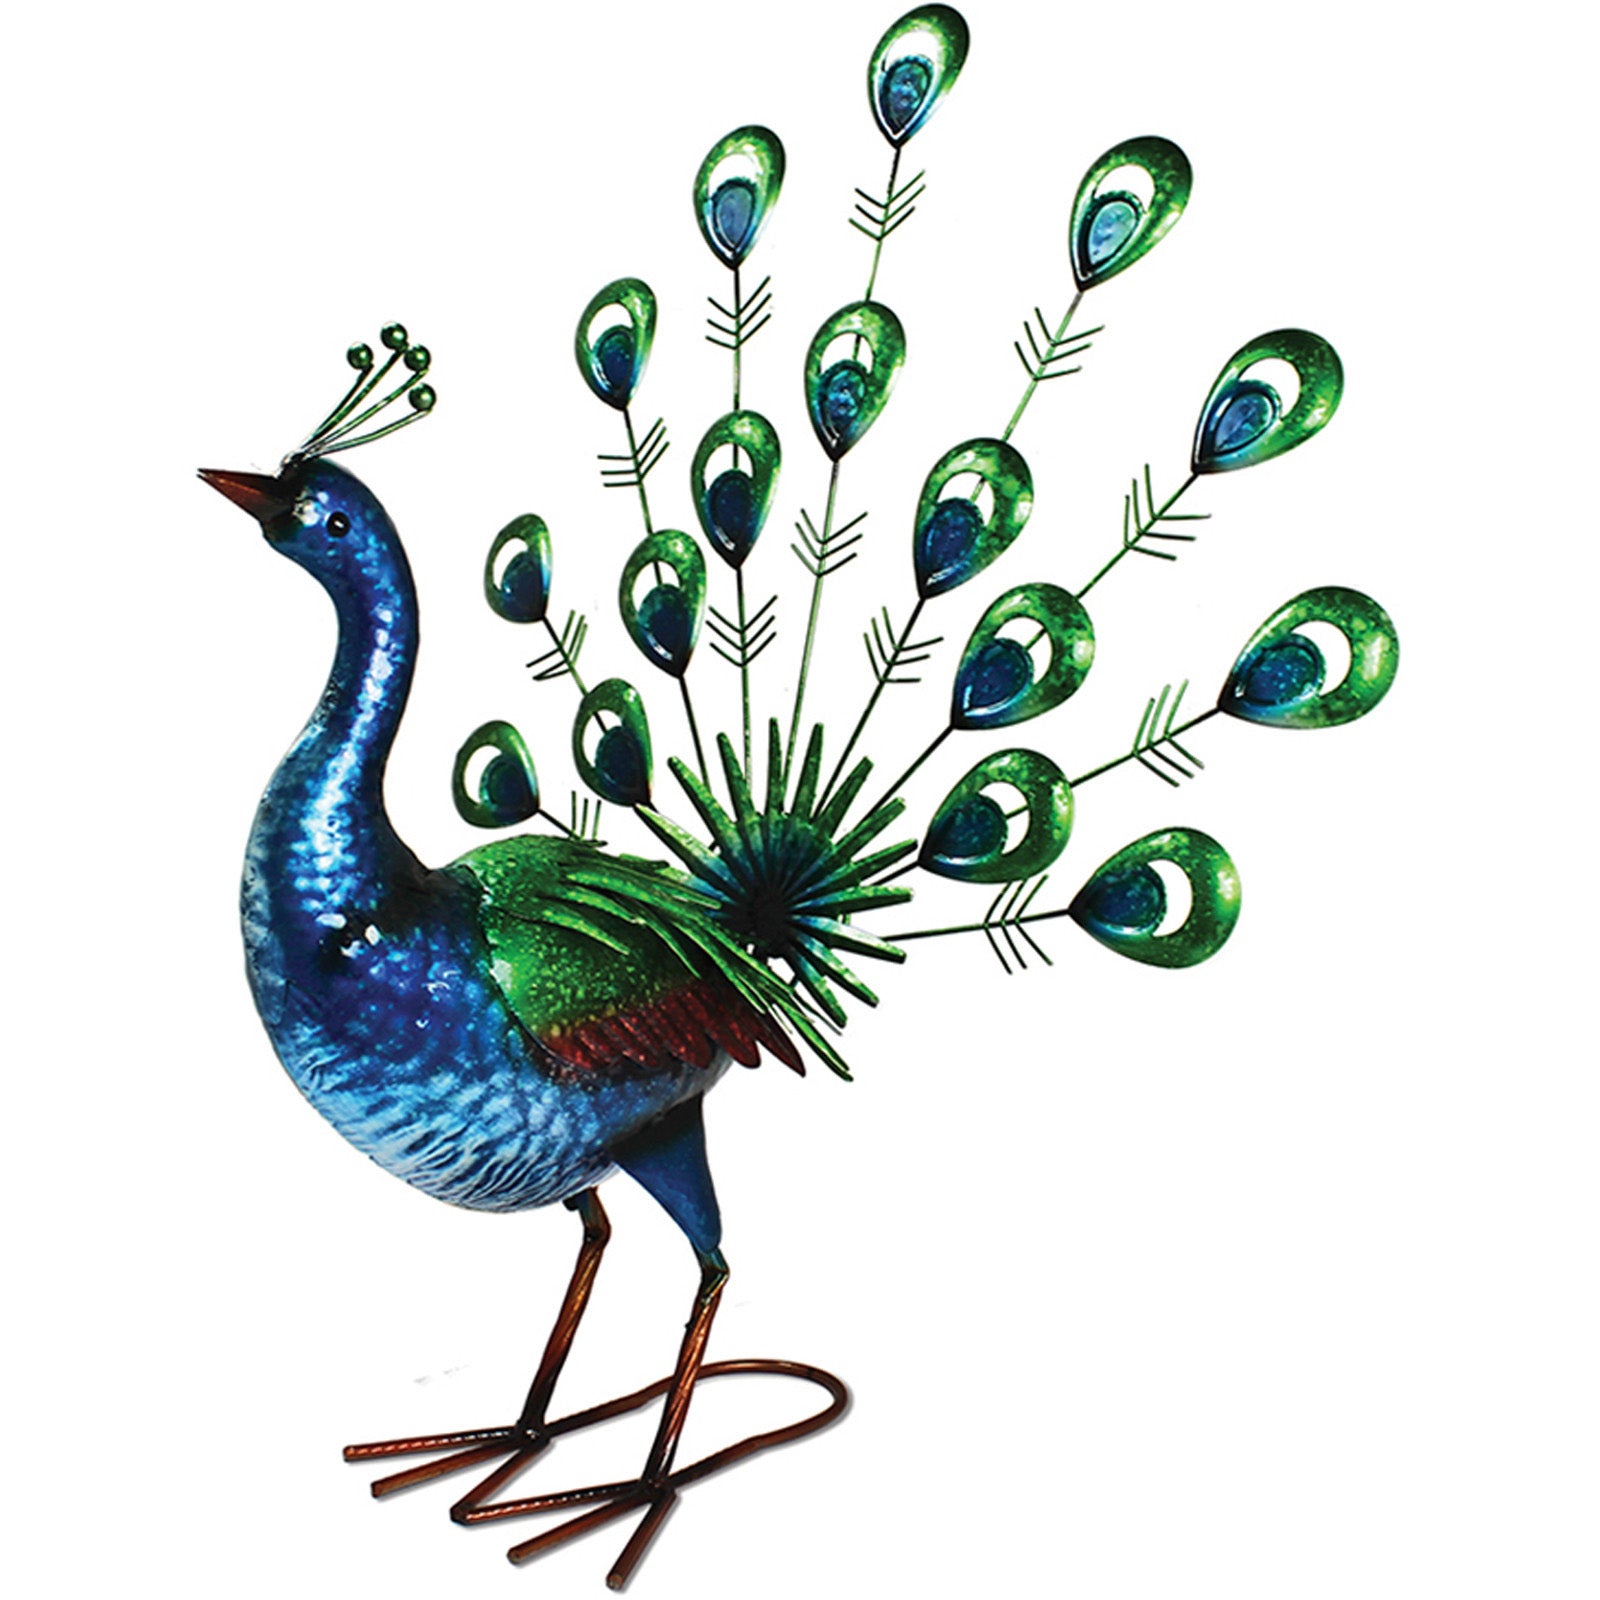 Primus Vibrant Fantail Peacock 42cm x 55cm